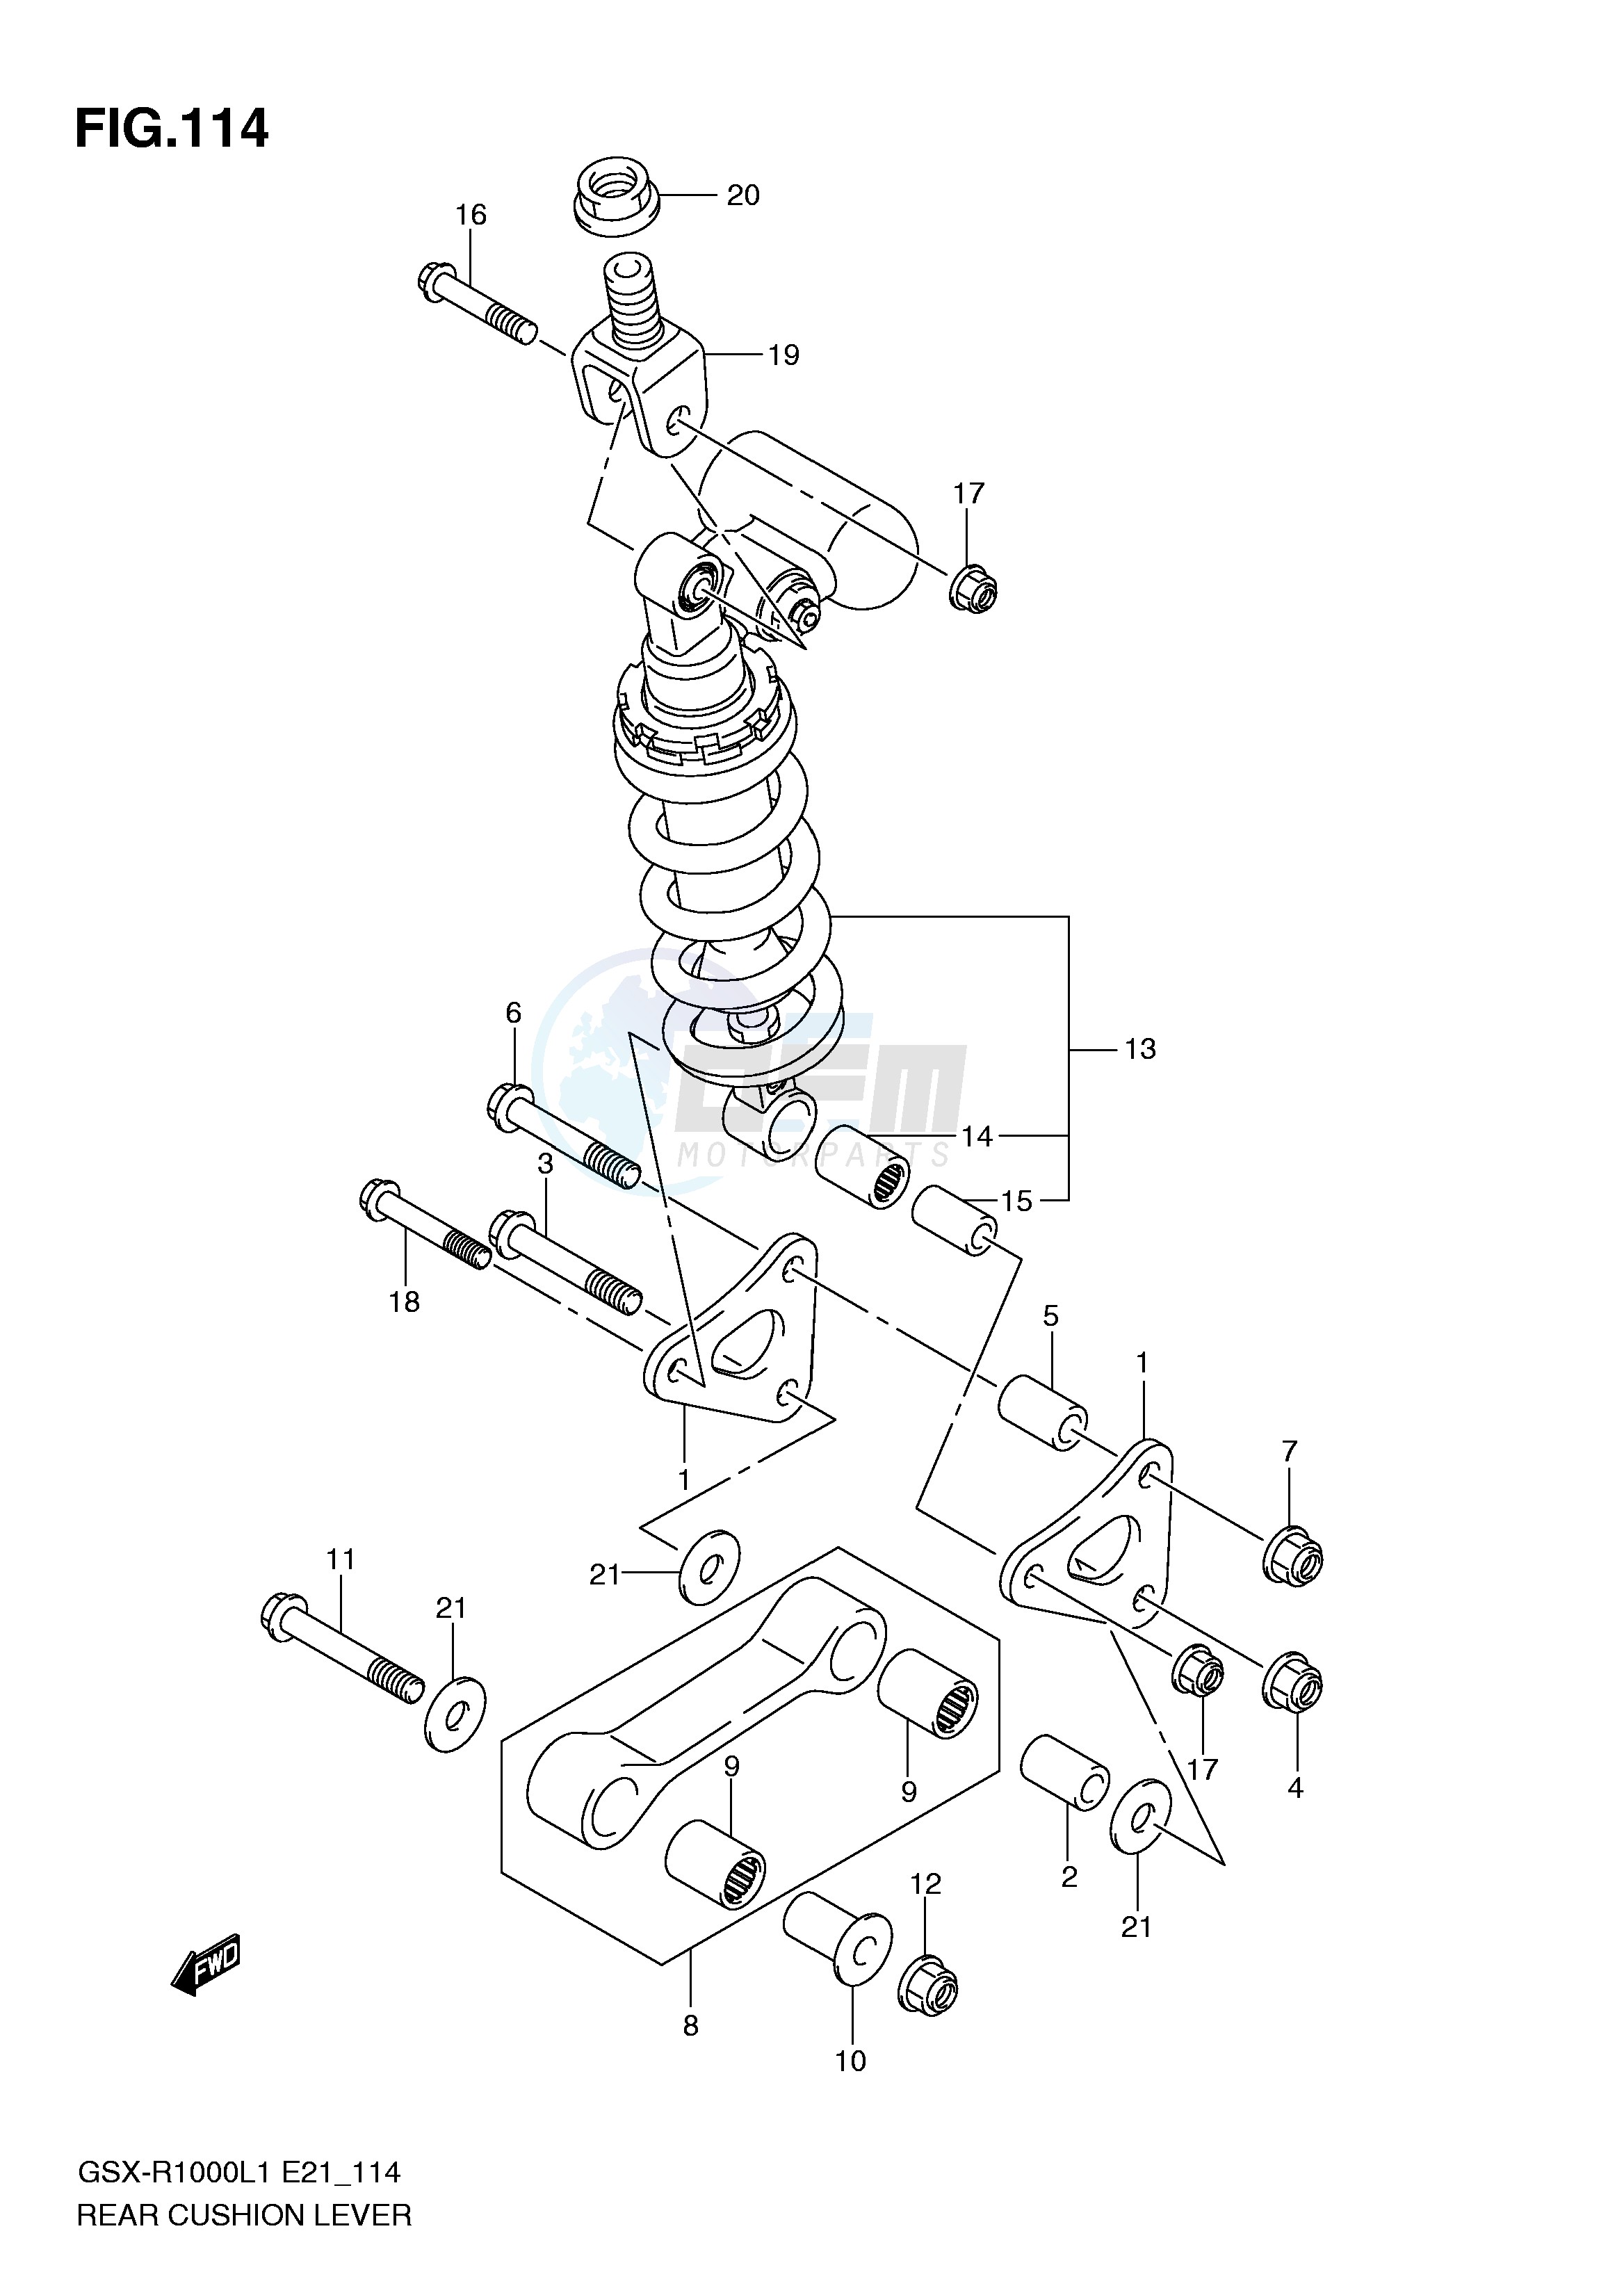 REAR CUSHION LEVER (GSX-R1000L1 E21) blueprint